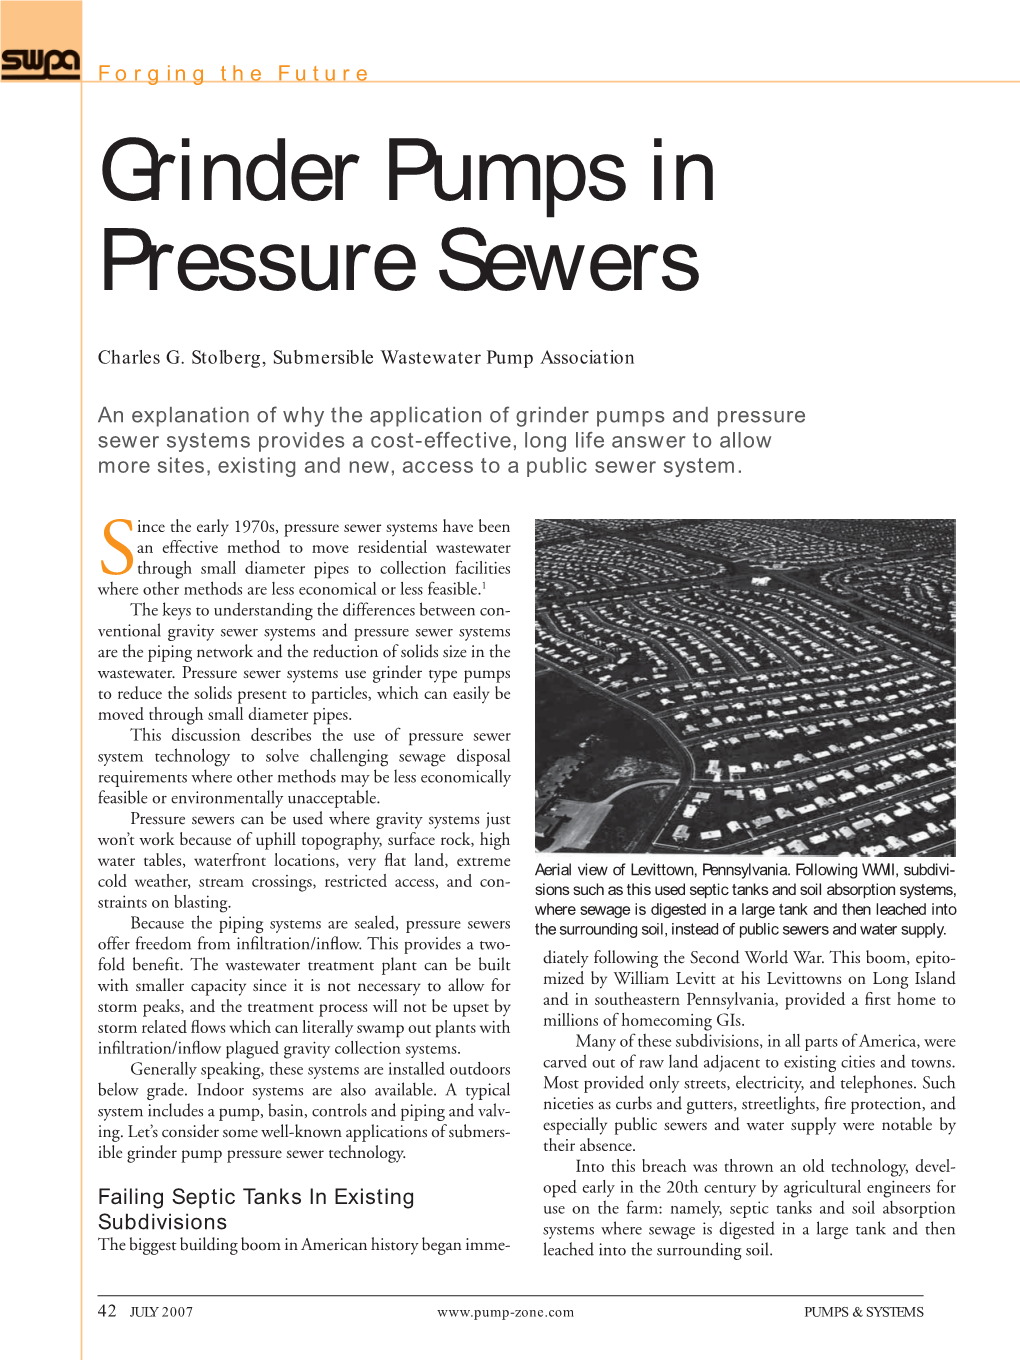 Grinder Pumps in Pressure Sewers